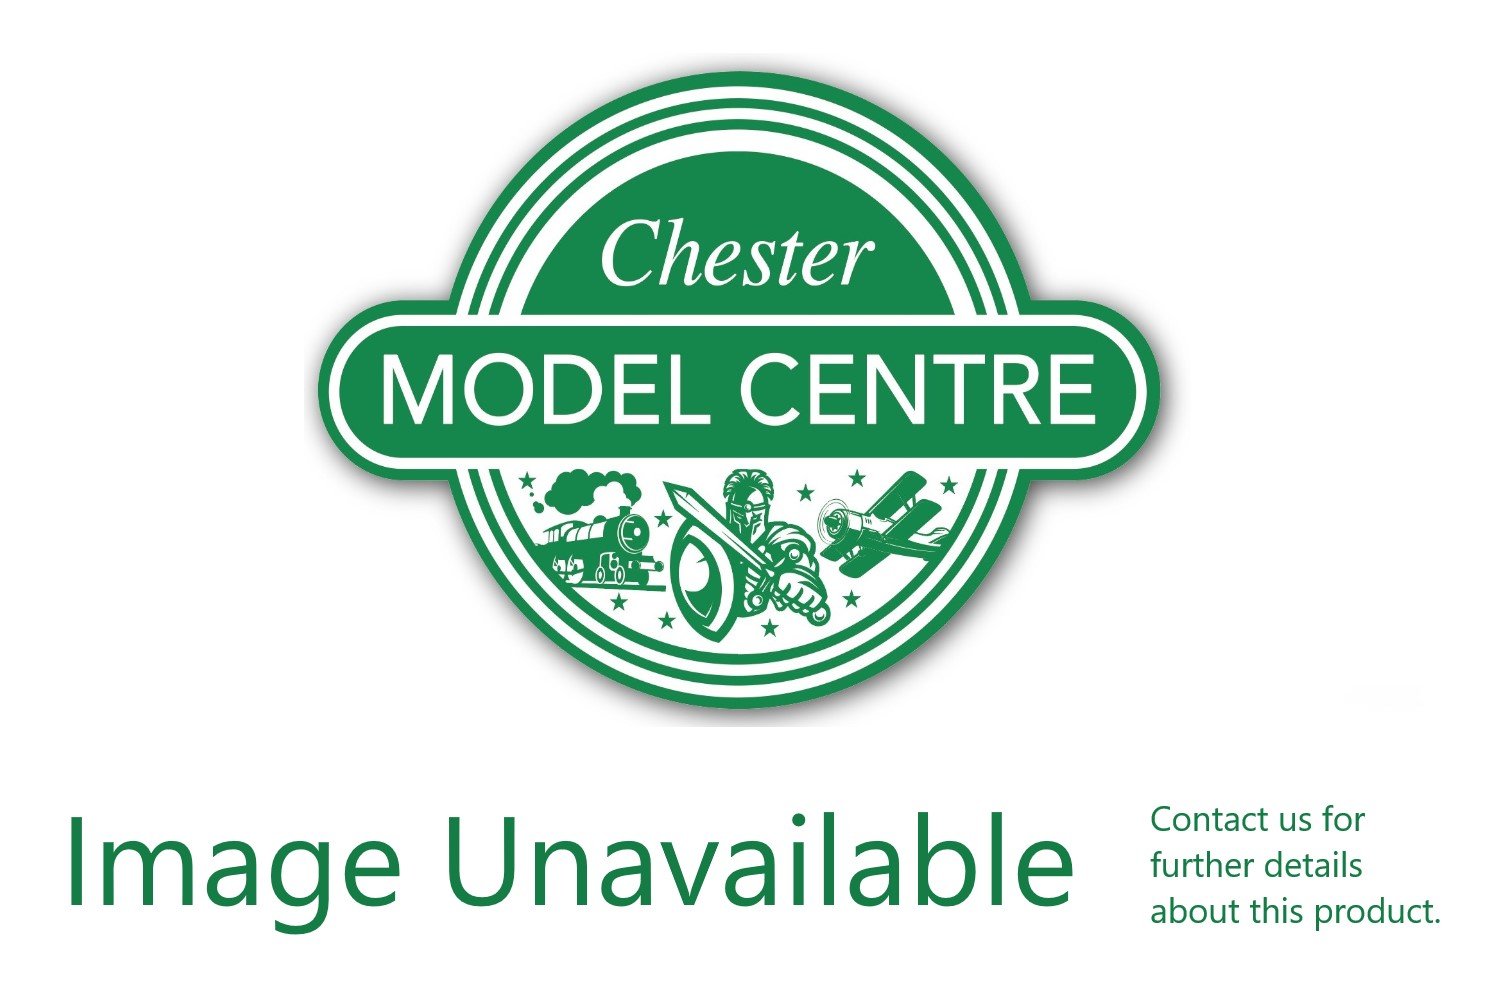 LMV Lince - Chester Model Centre